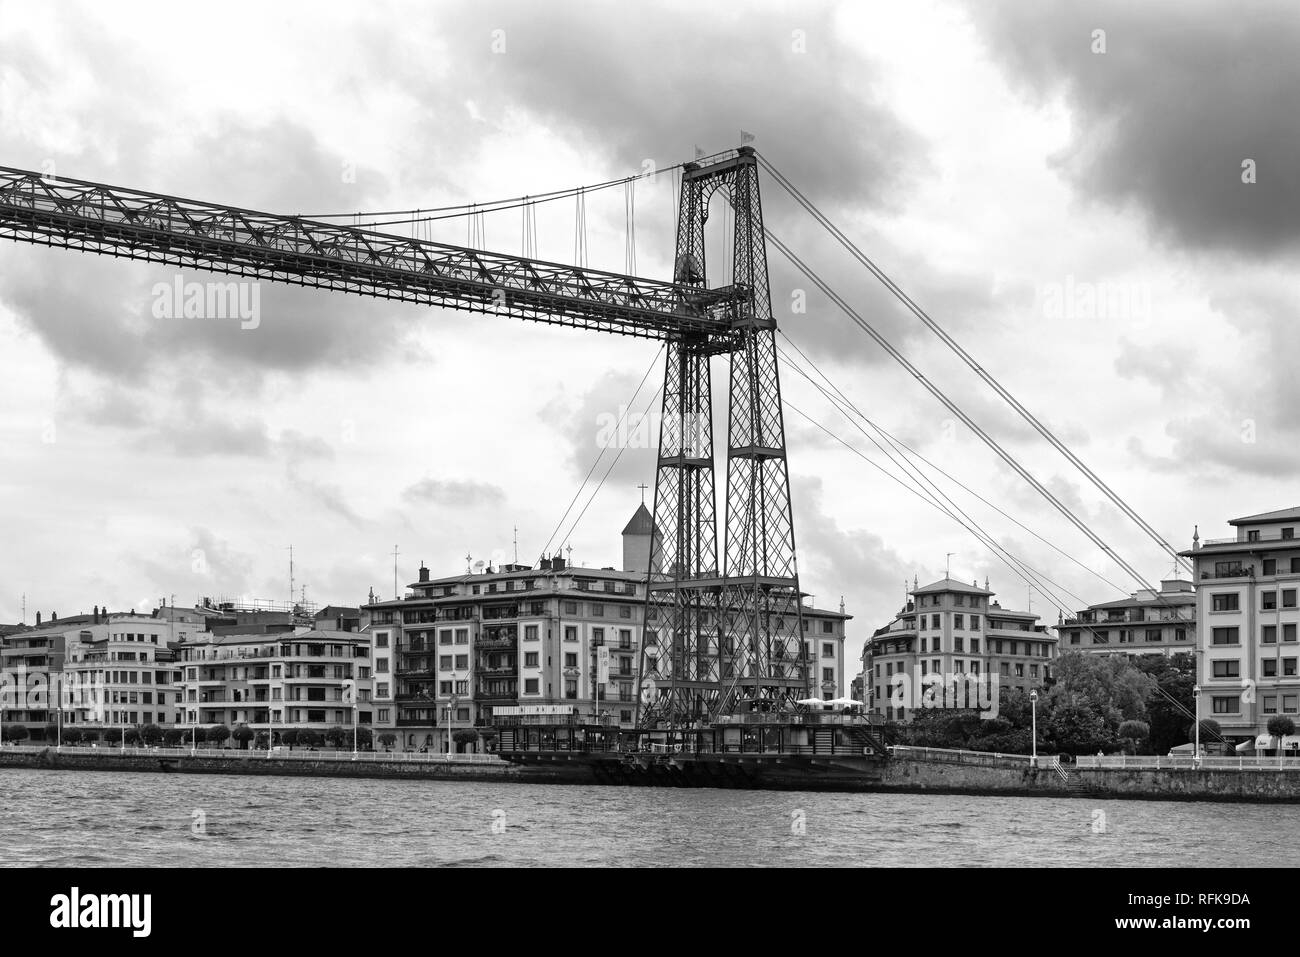 Il ponte di sospensione di bizkaia (Puente de Vizcaya) tra getxo e portugalete oltre il Ria de Bilbao, in bianco e nero Foto Stock